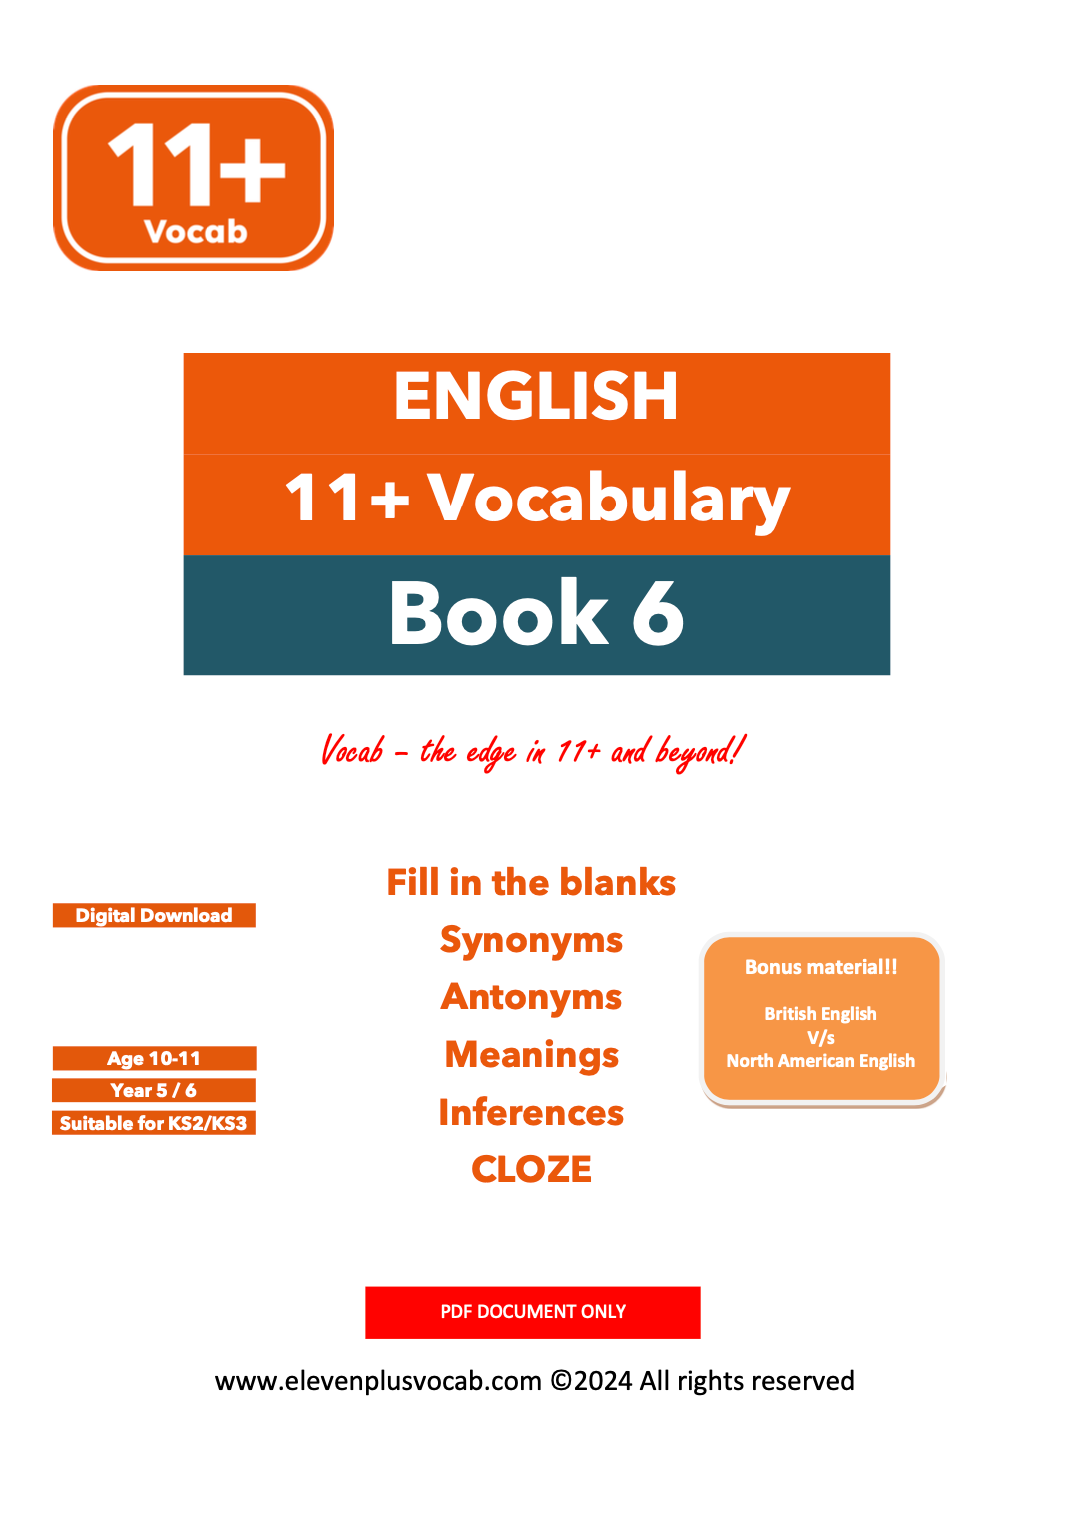 11+ English Vocab - PDF Book 6